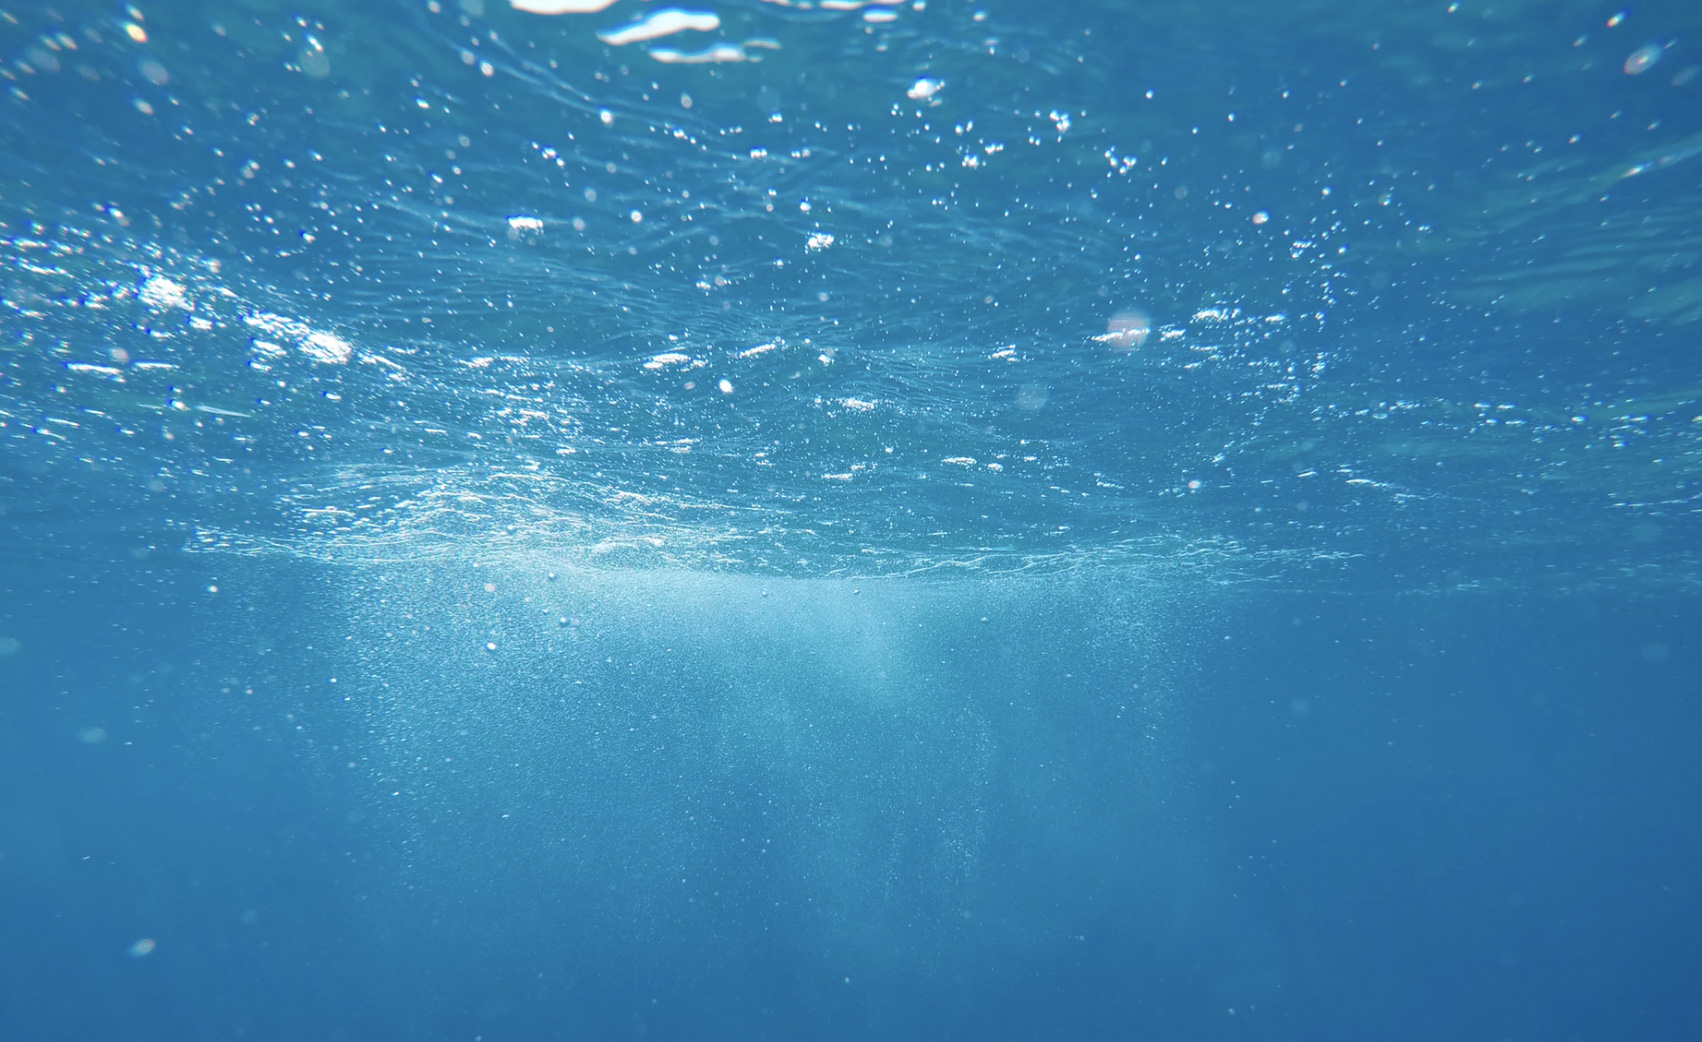 An underwater shot of the ocean